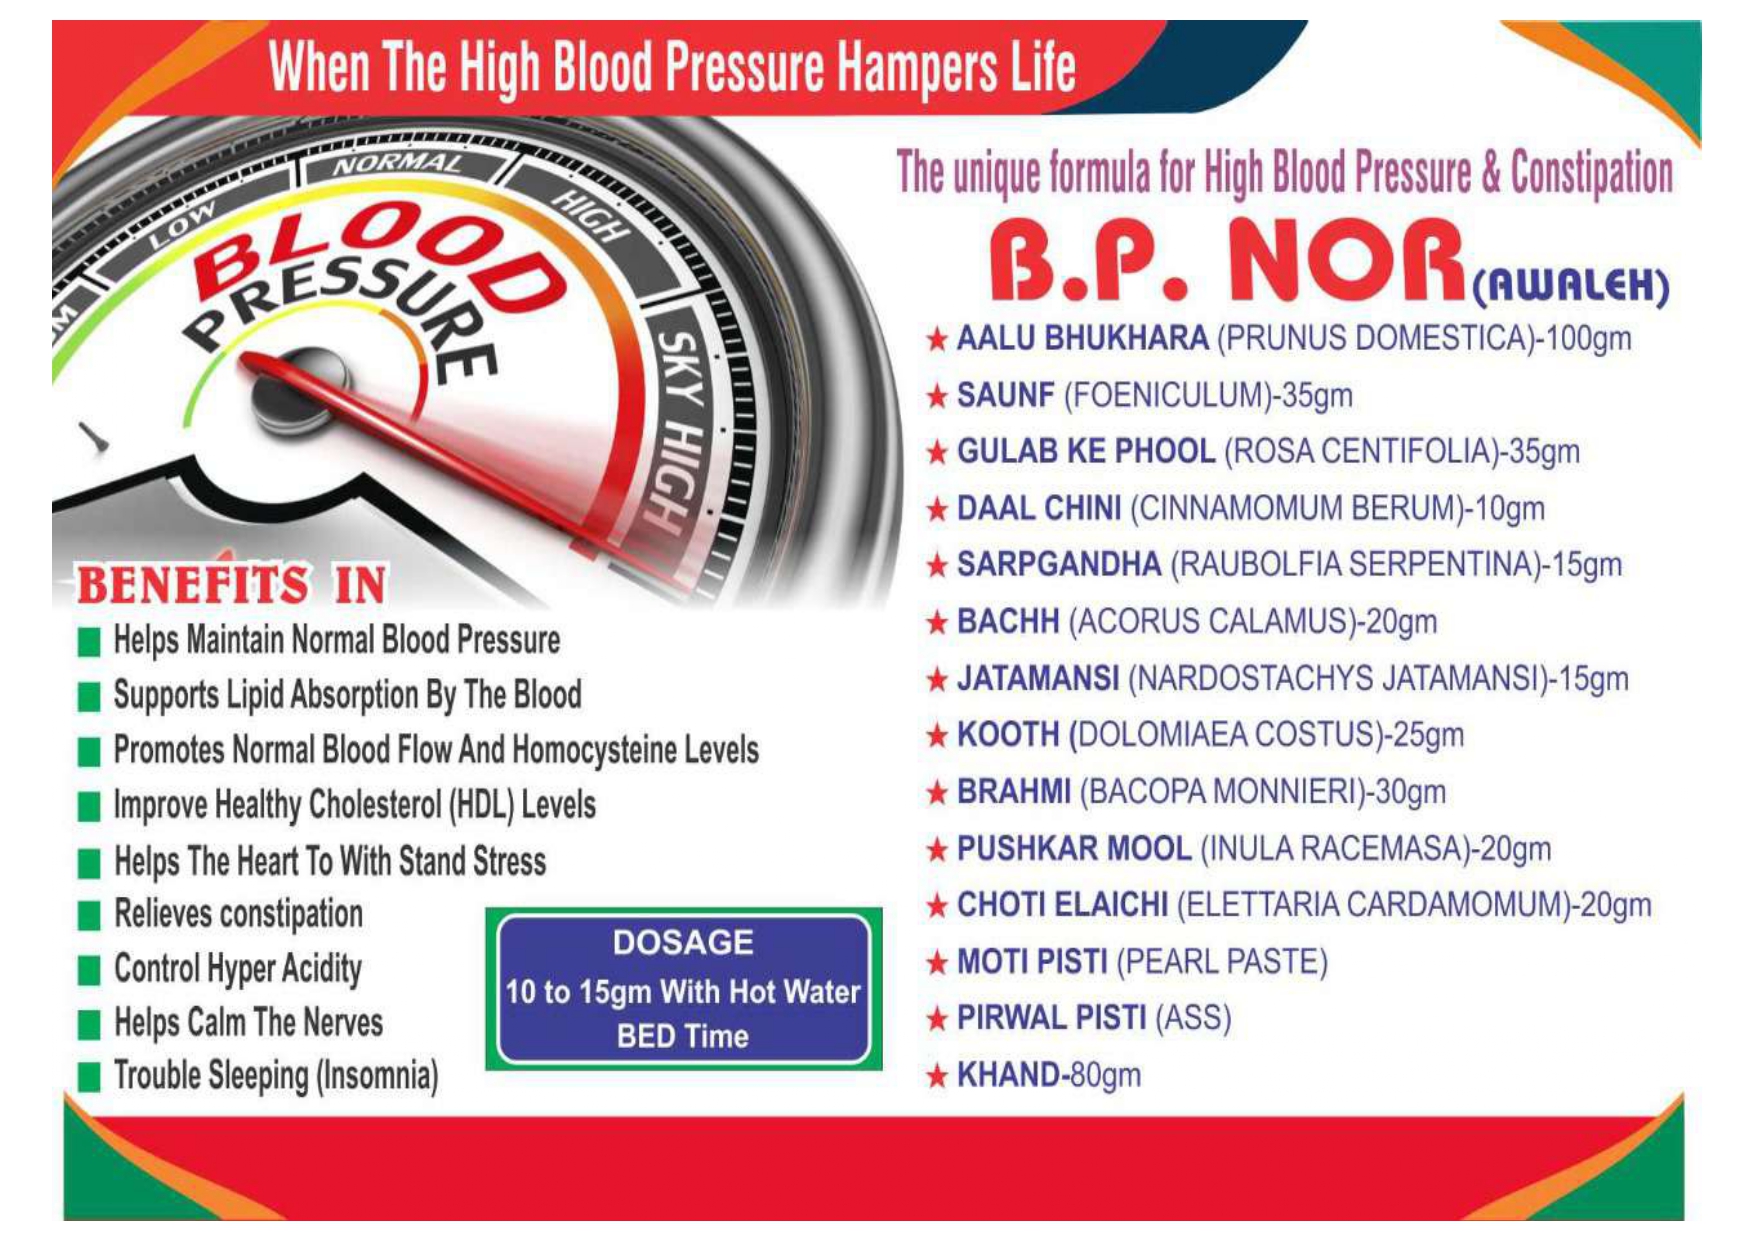 Normal blood pressure awleh powder